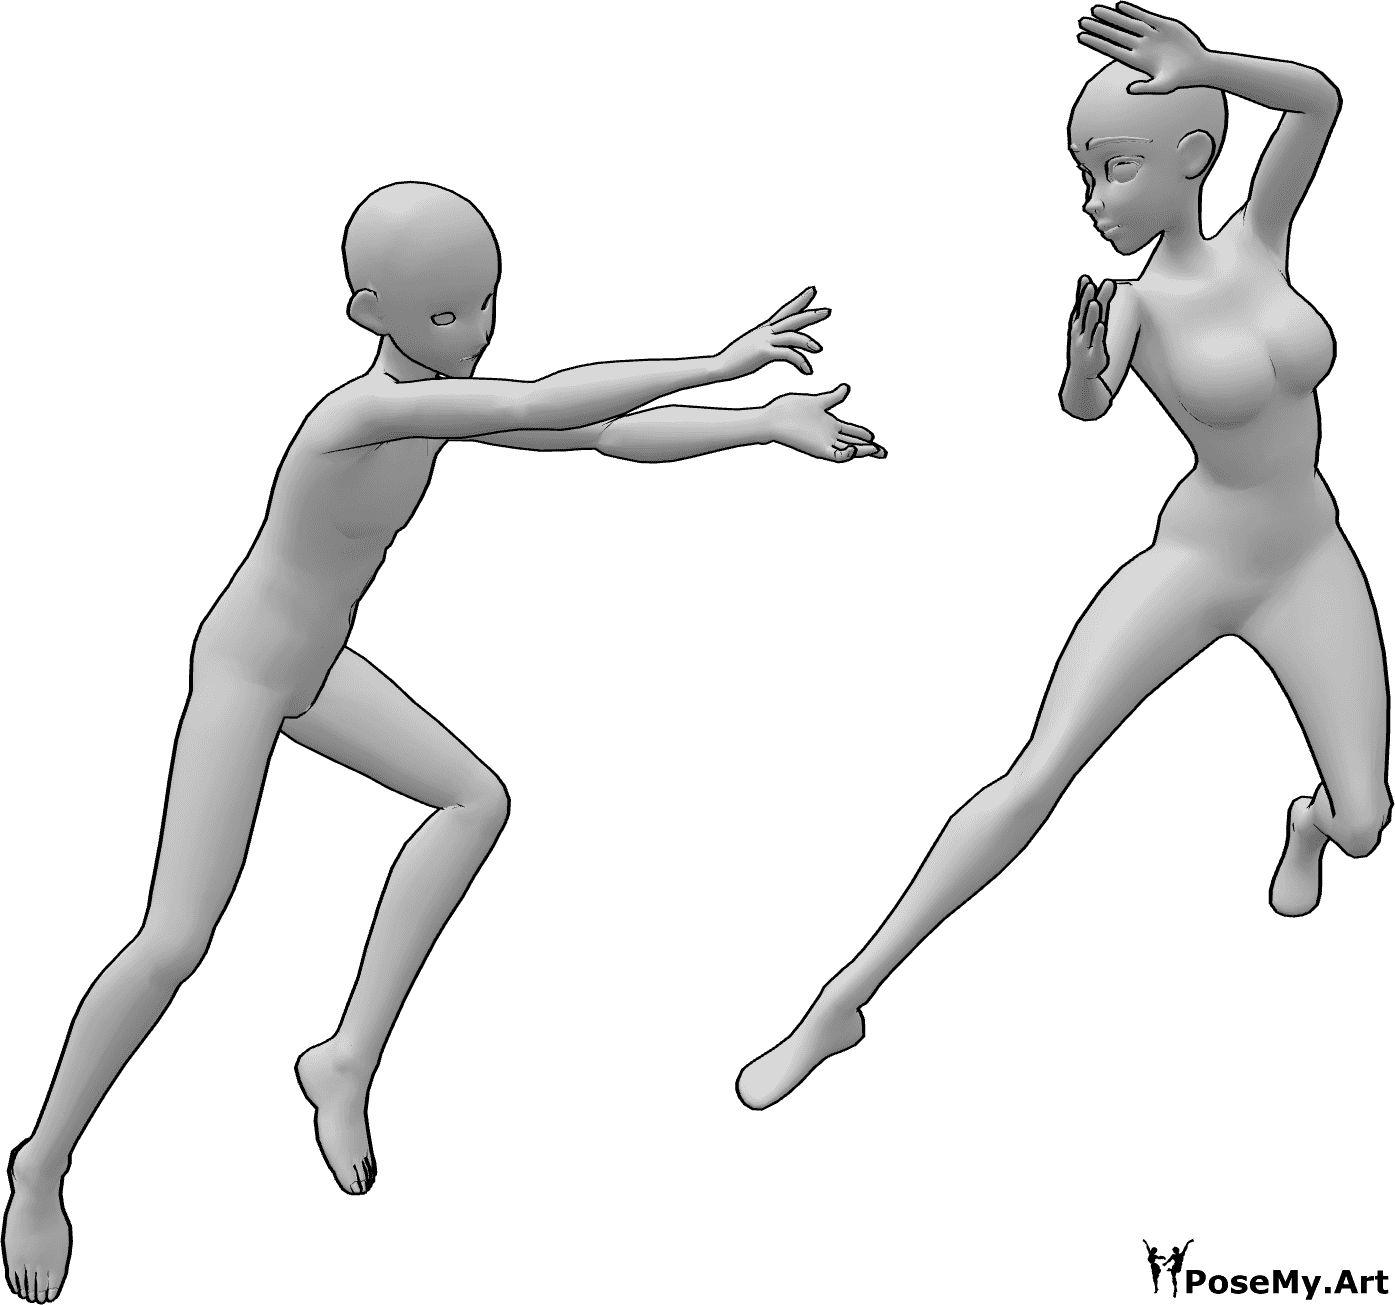 Posen-Referenz- Anime-Duo Kampf Pose - Anime weiblich und männlich in einem Fantasy-Kampf in der Luft mit magischen Kräften Pose